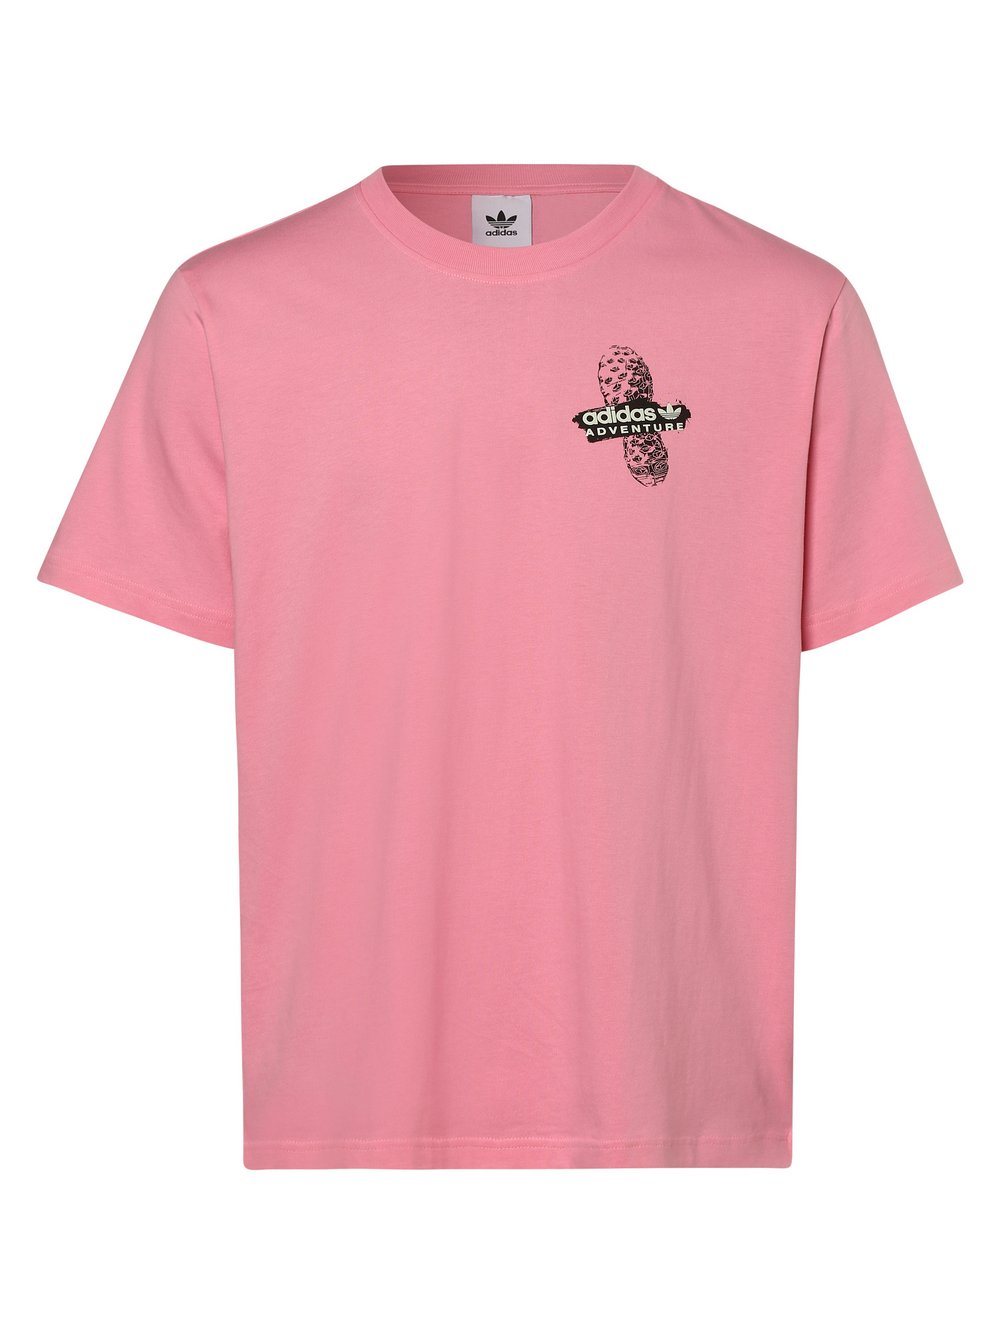 Adidas Originals - T-shirt męski, różowy